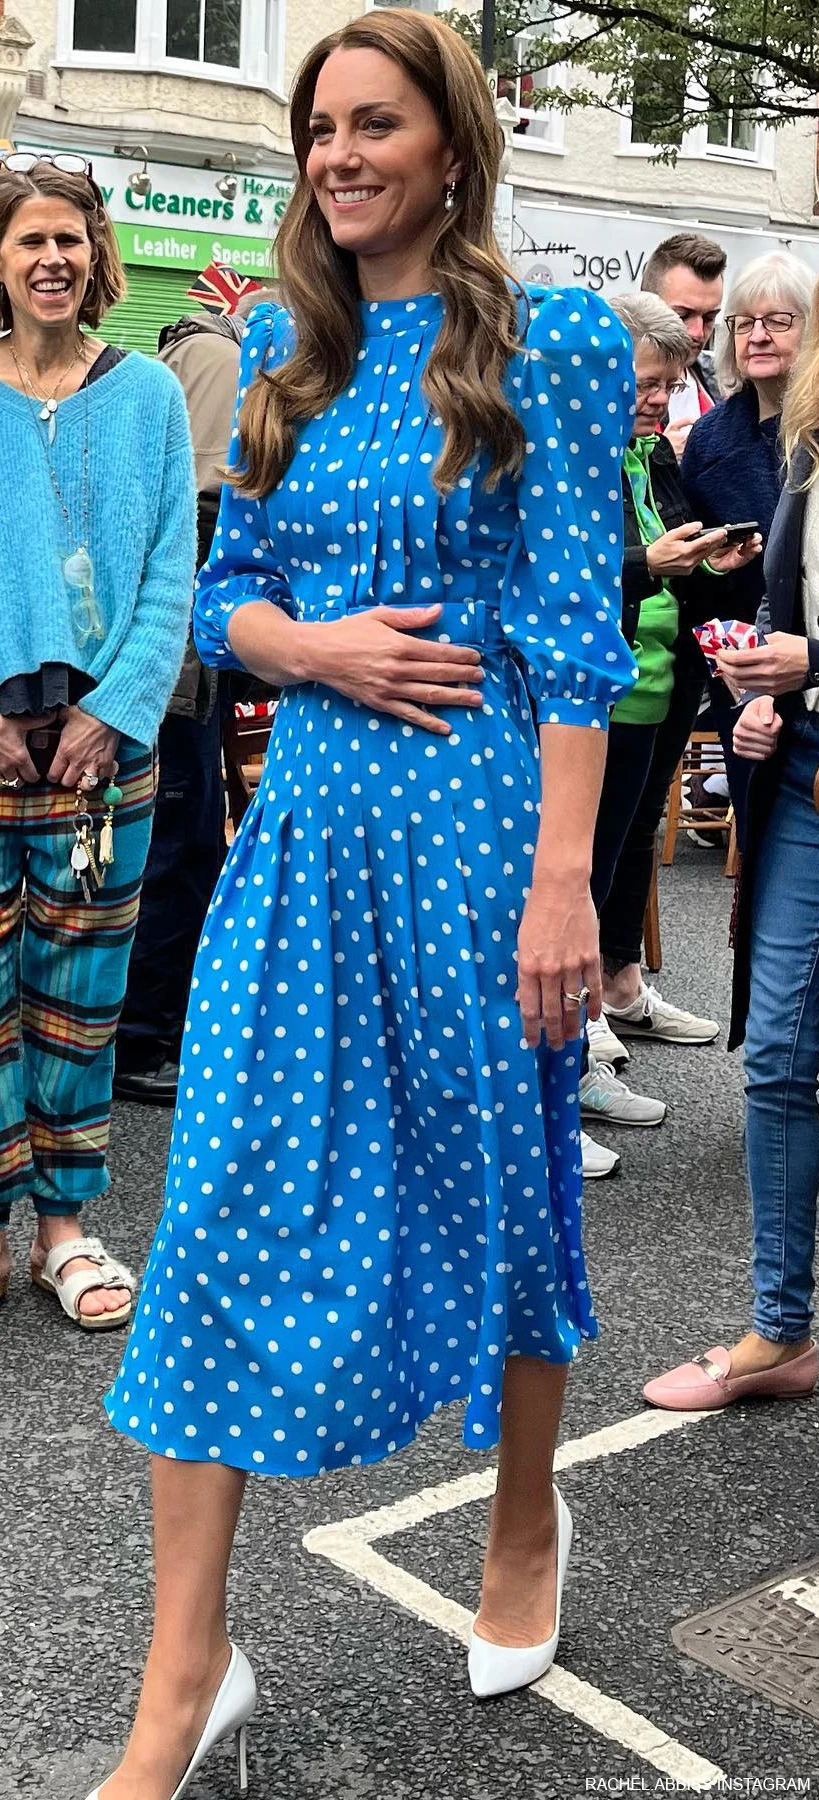 polka dot dress for women